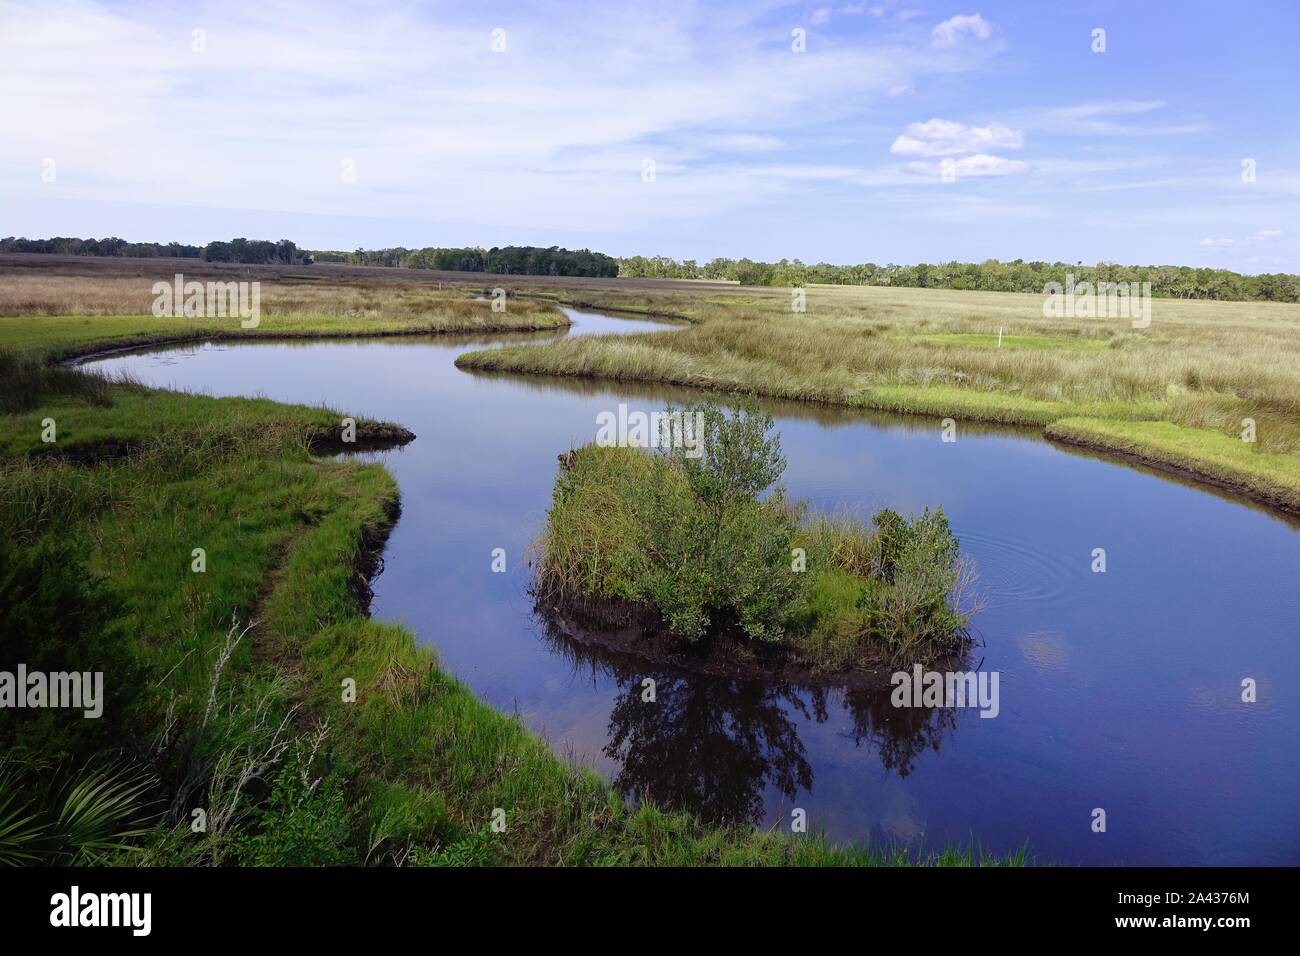 Salt marsh, Chassahowitzka National Wildlife Refuge, Homosassa, Florida Stock Photo